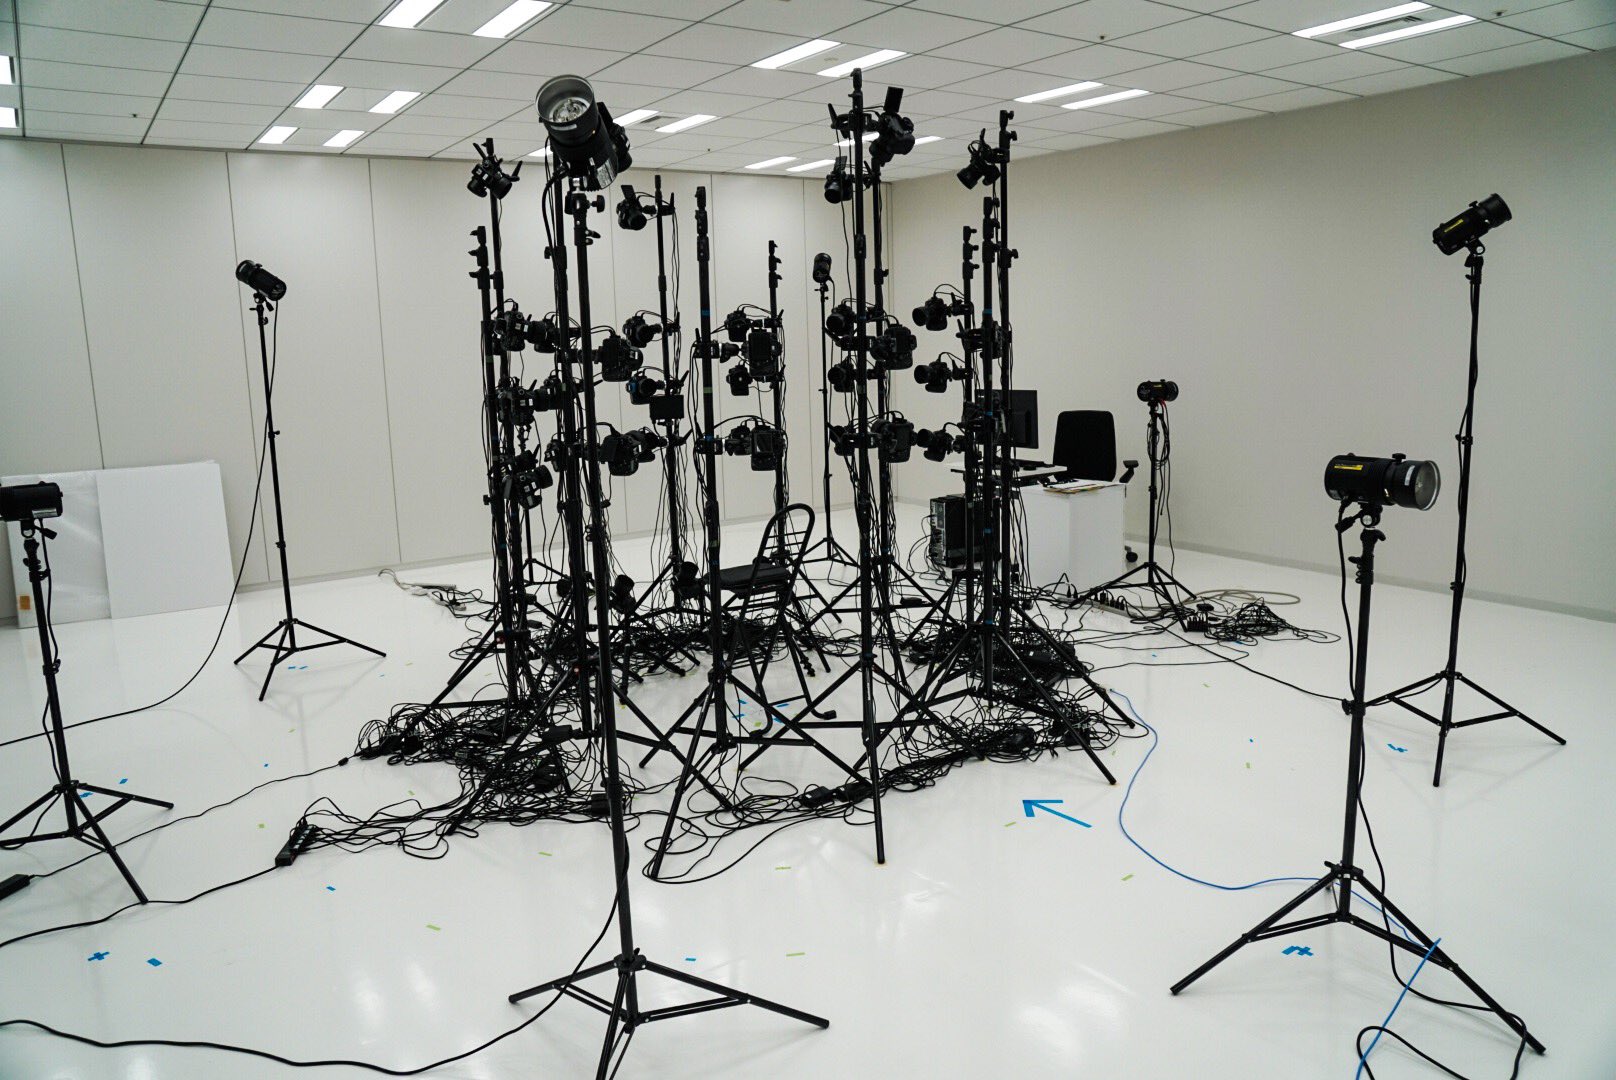 Séance de scanning 3D chez Kojima Productions, le 23 février 2017